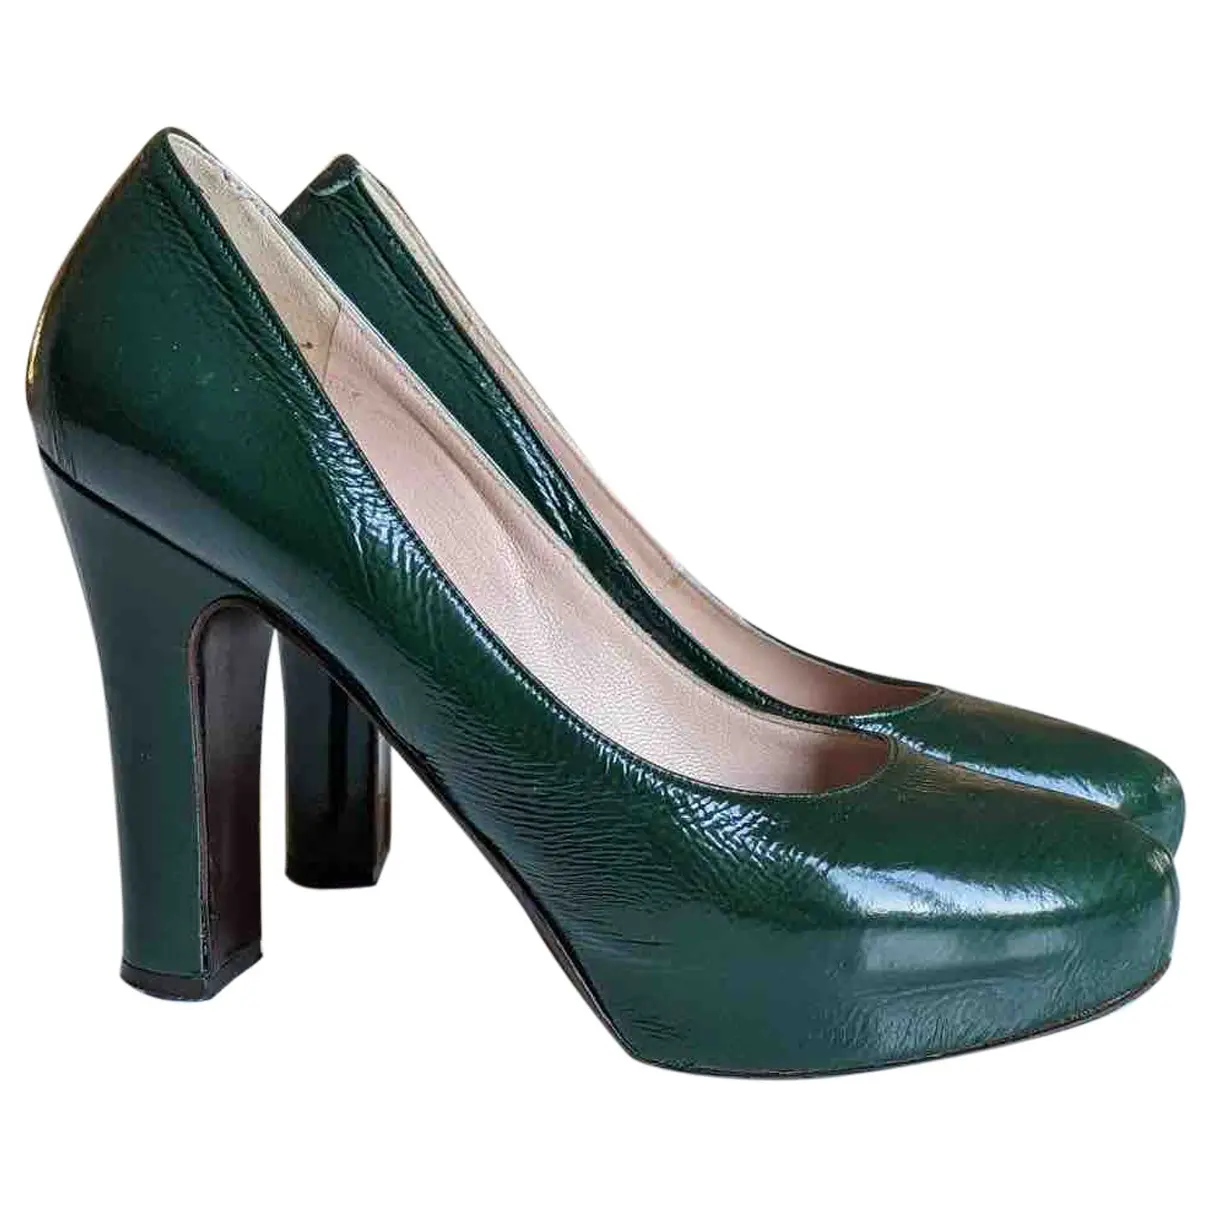 Patent leather heels L'AUTRE CHOSE